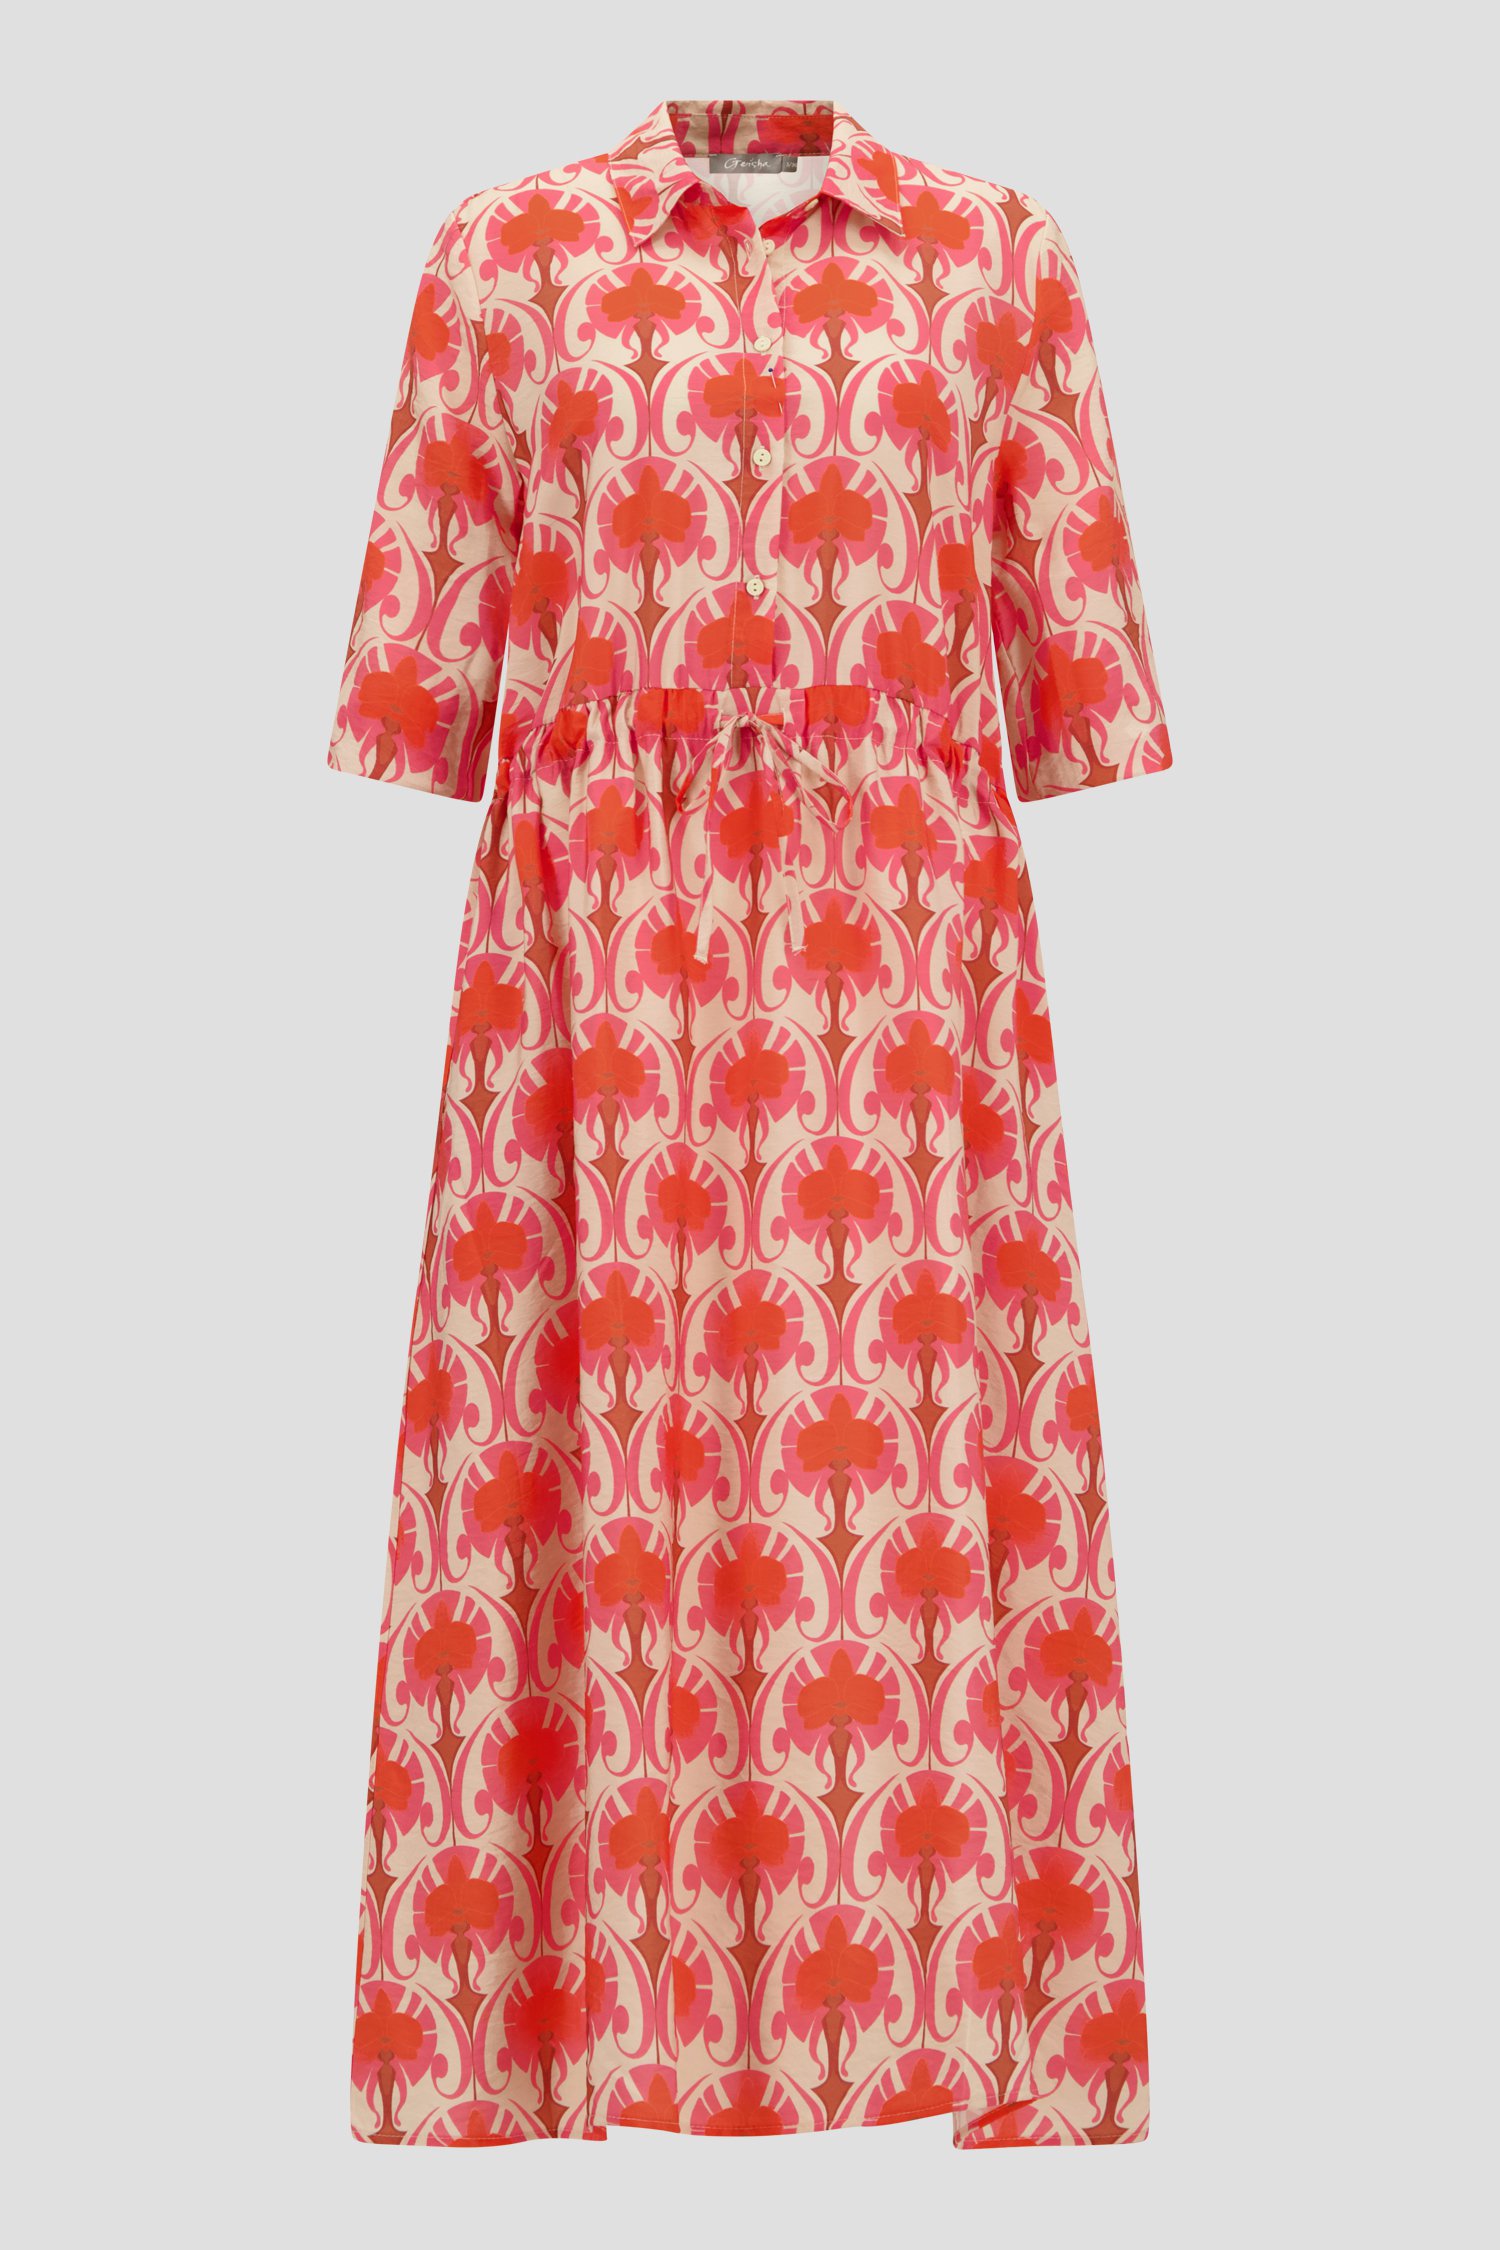 Lang beige kleedje met oranje-roze print van Geisha voor Dames